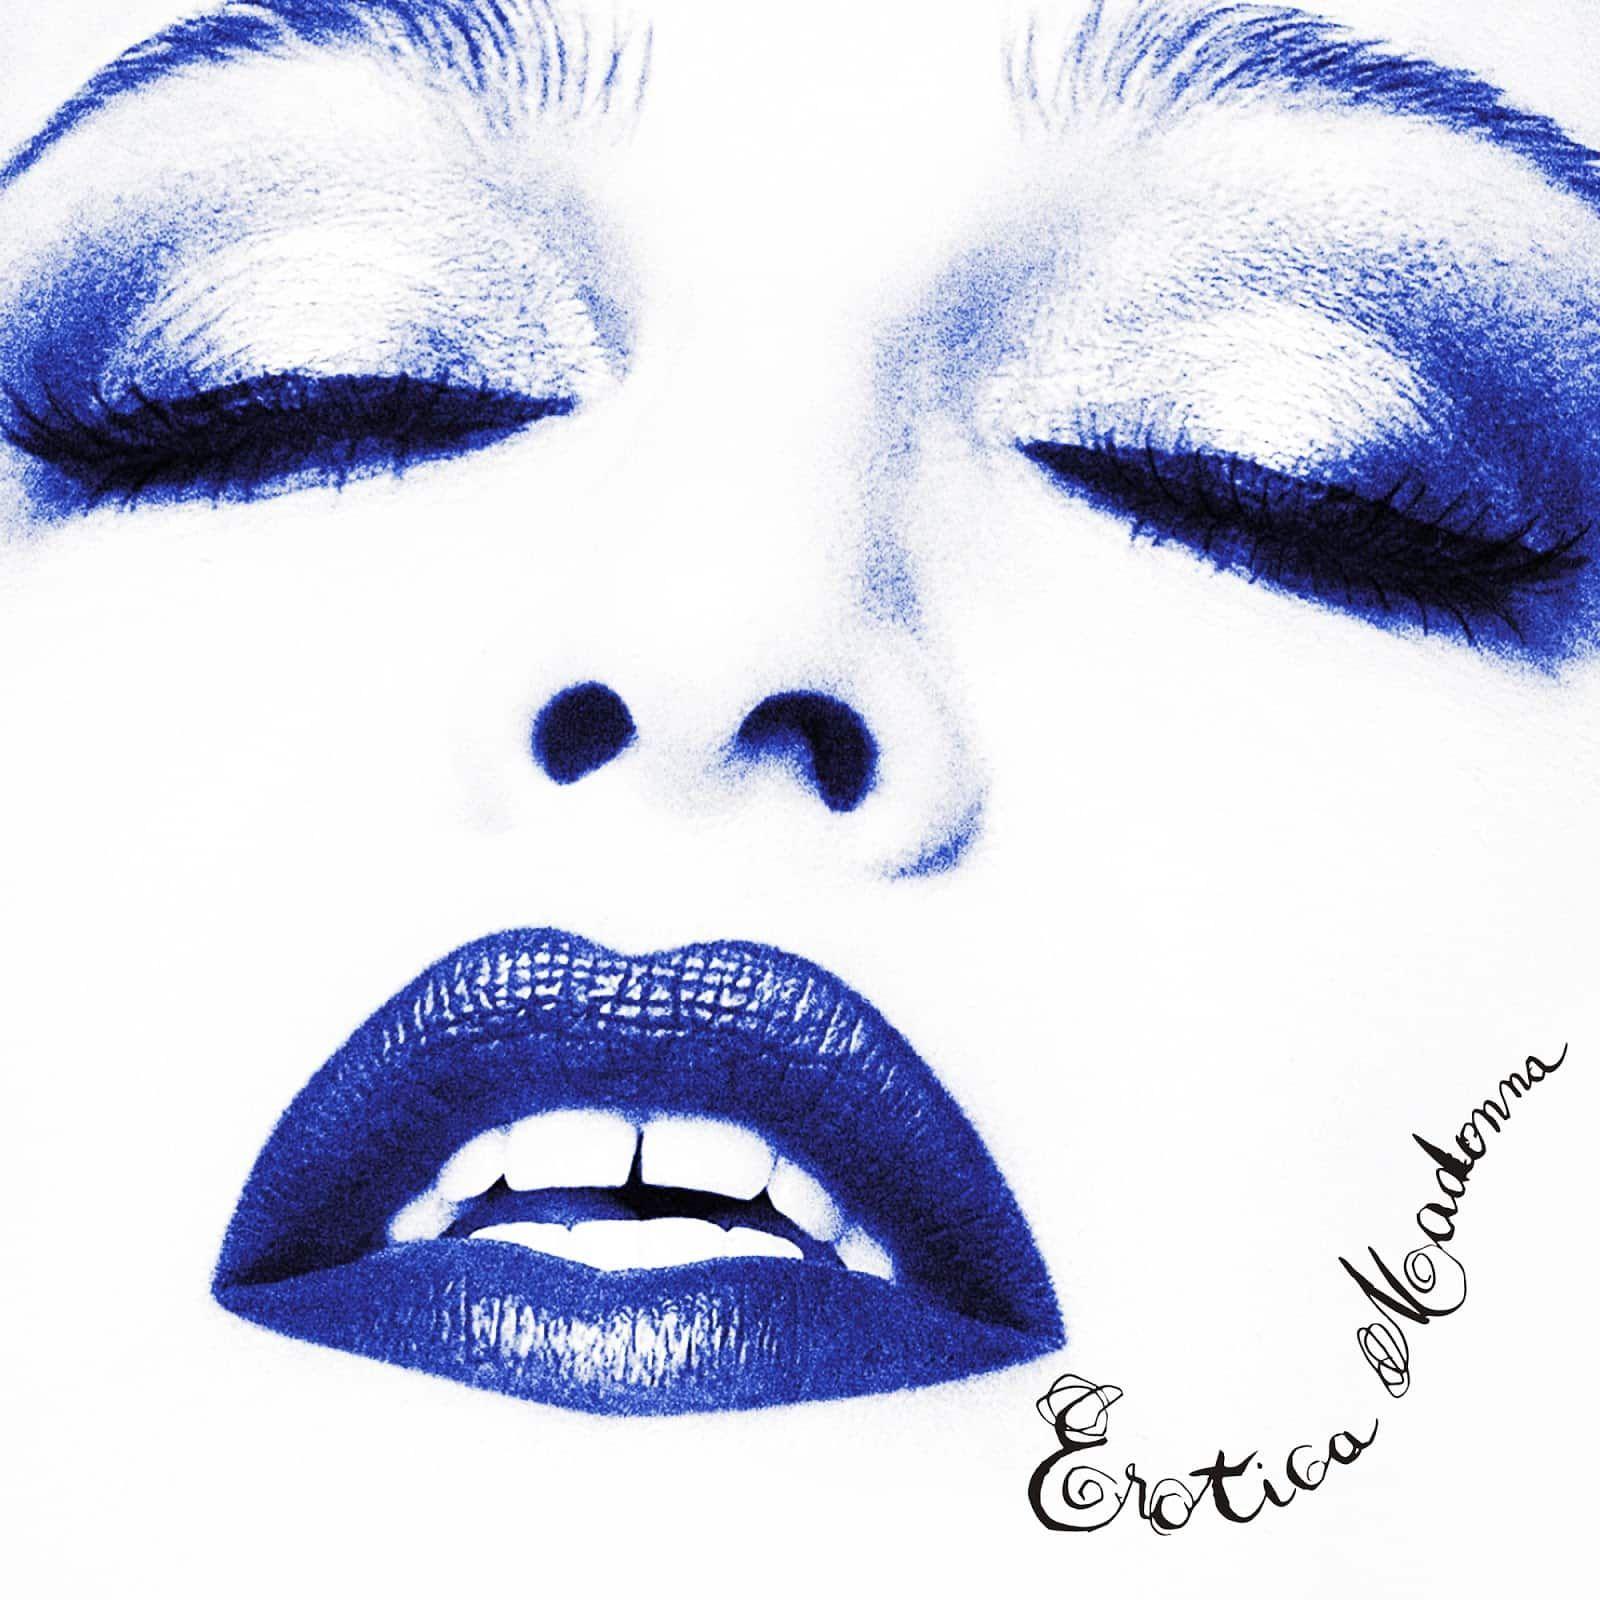 Capa do disco 'Erotica', lançado em 1992